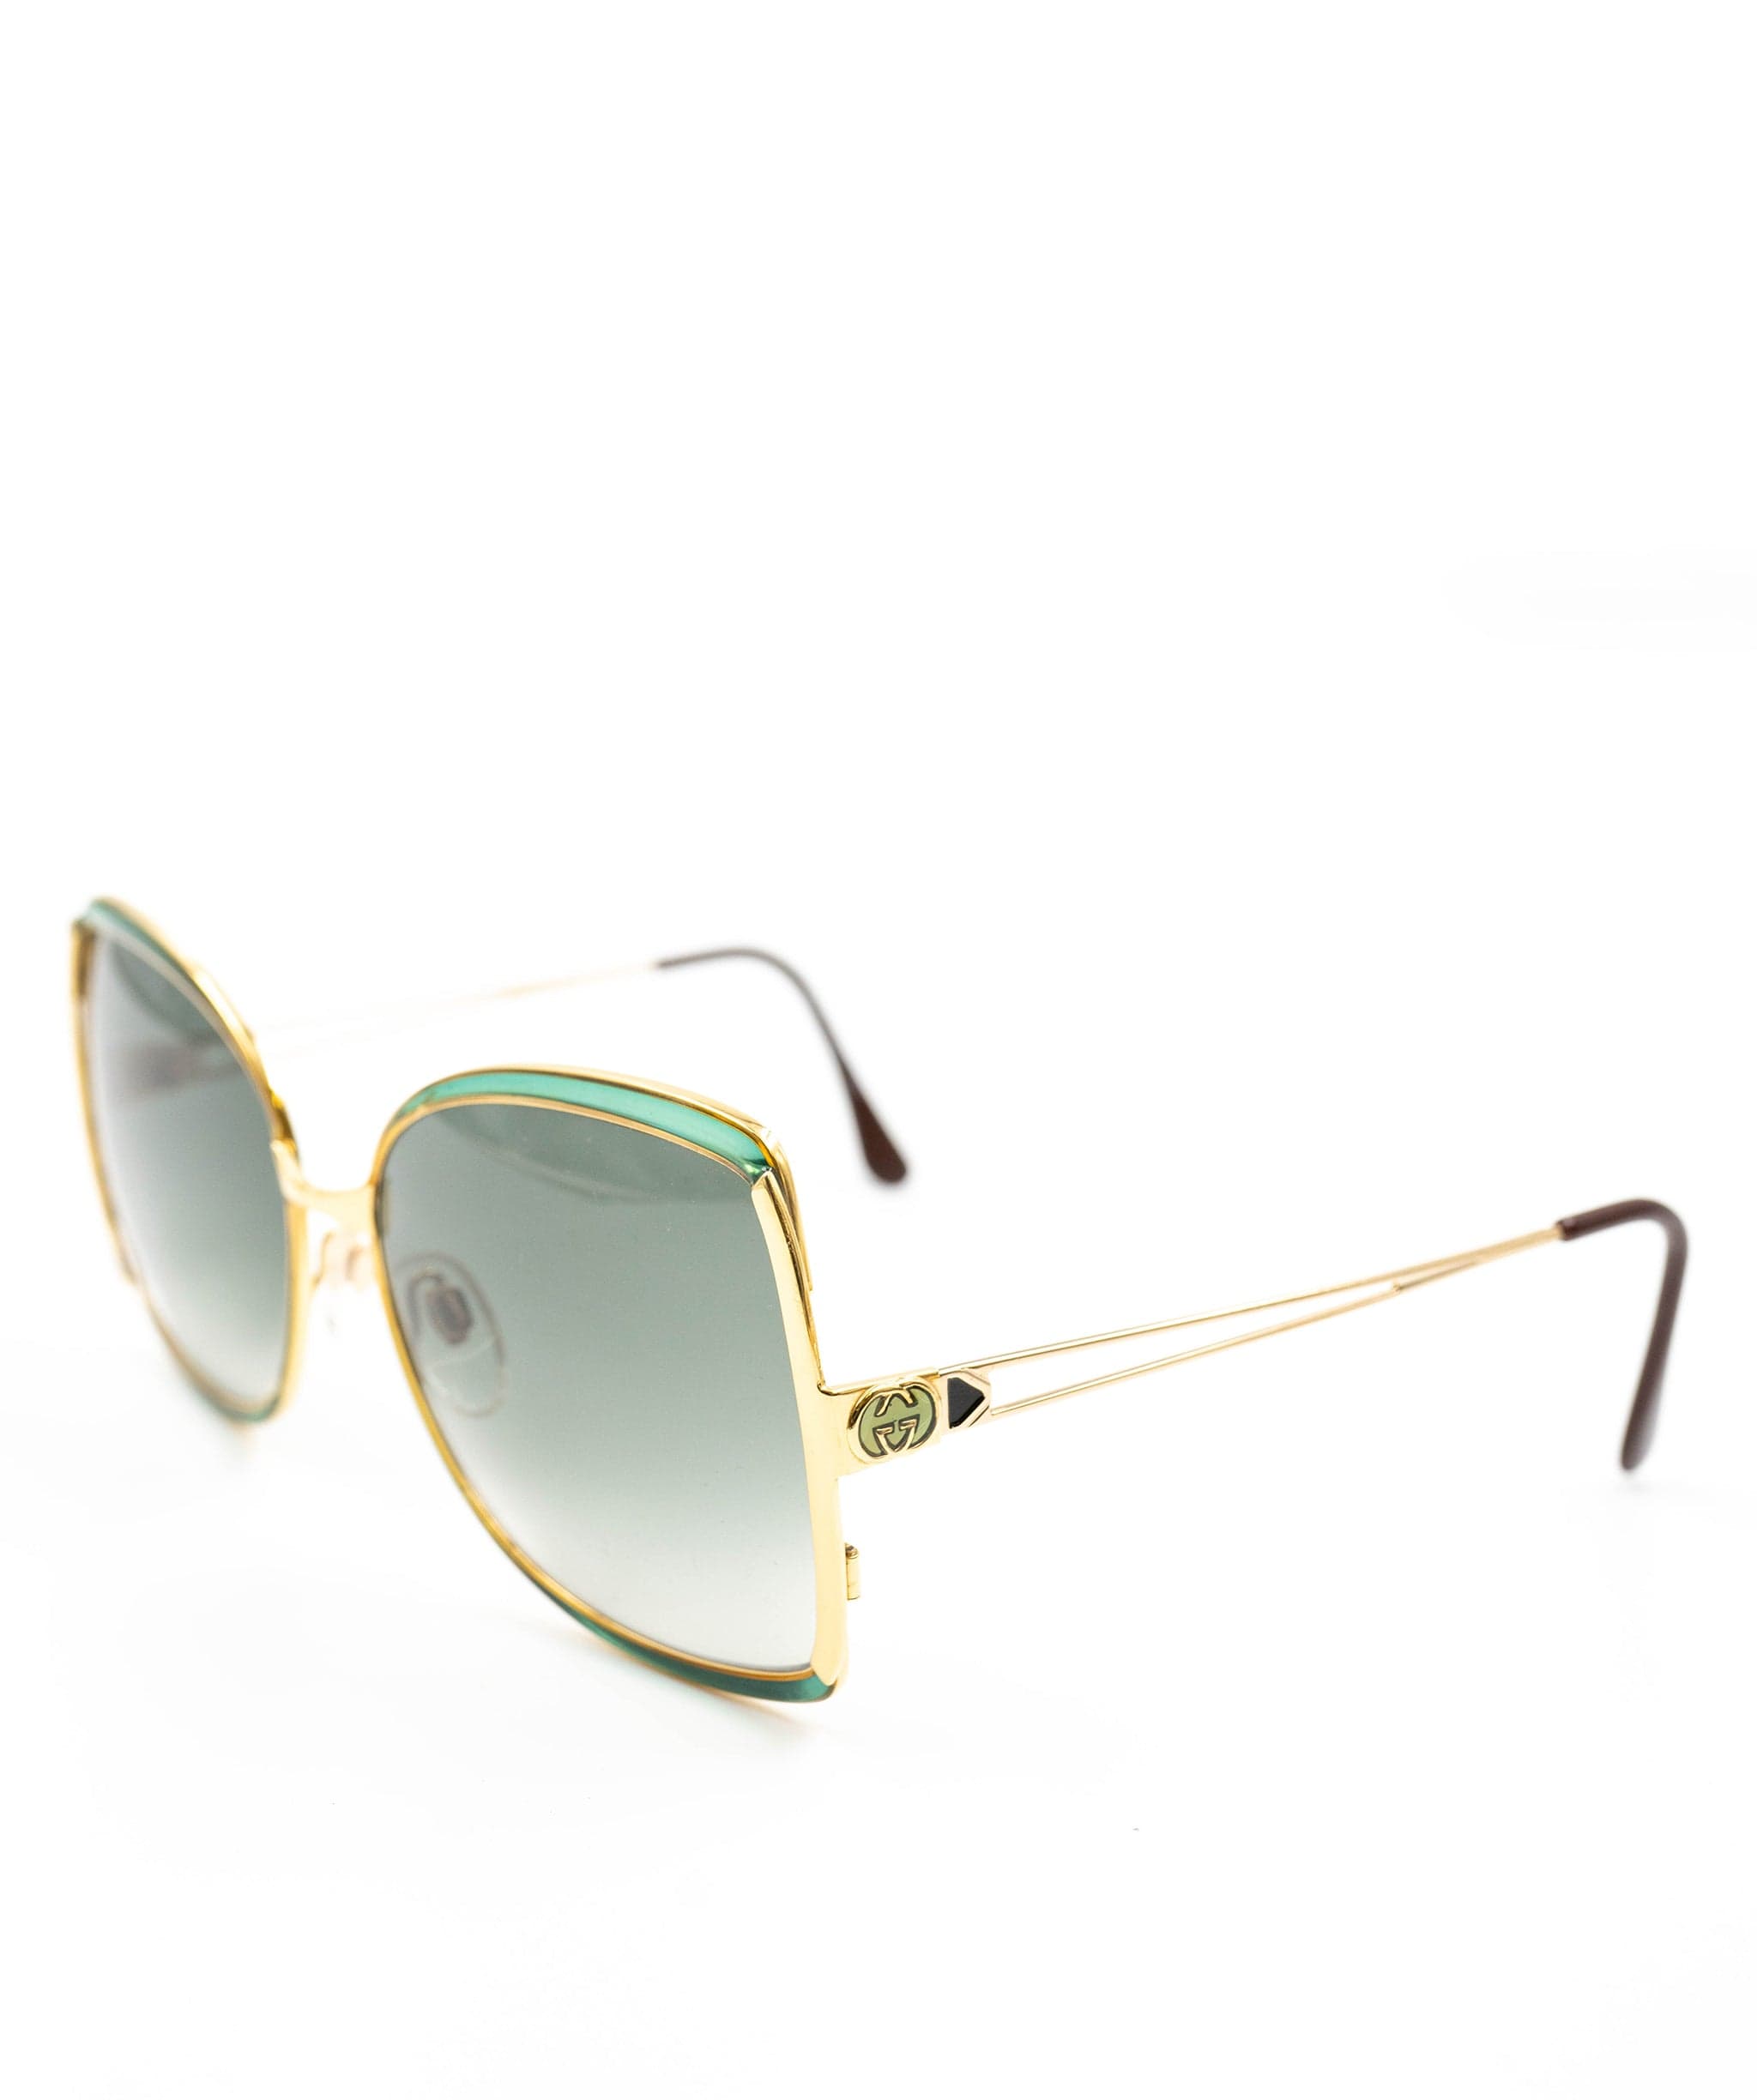 Gucci Gucci 70s inspired Sunglasses - AWL2603